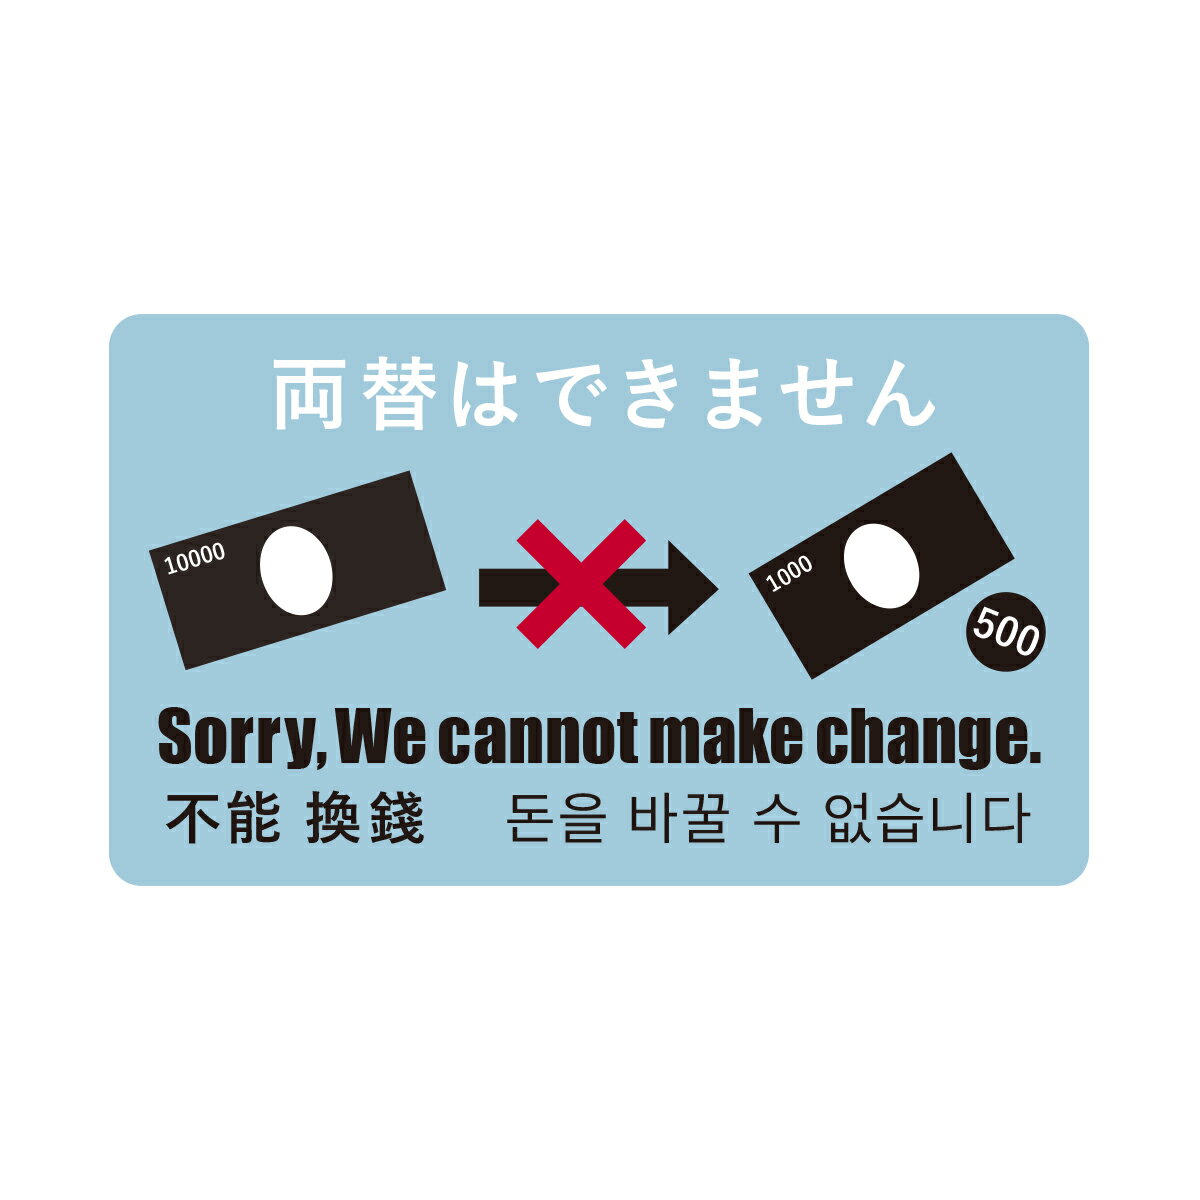 両替はできません ステッカー シール 識別 標識 案内 外国人観光客用 日本語 英語 中国語 韓国語 4ヶ国語表示